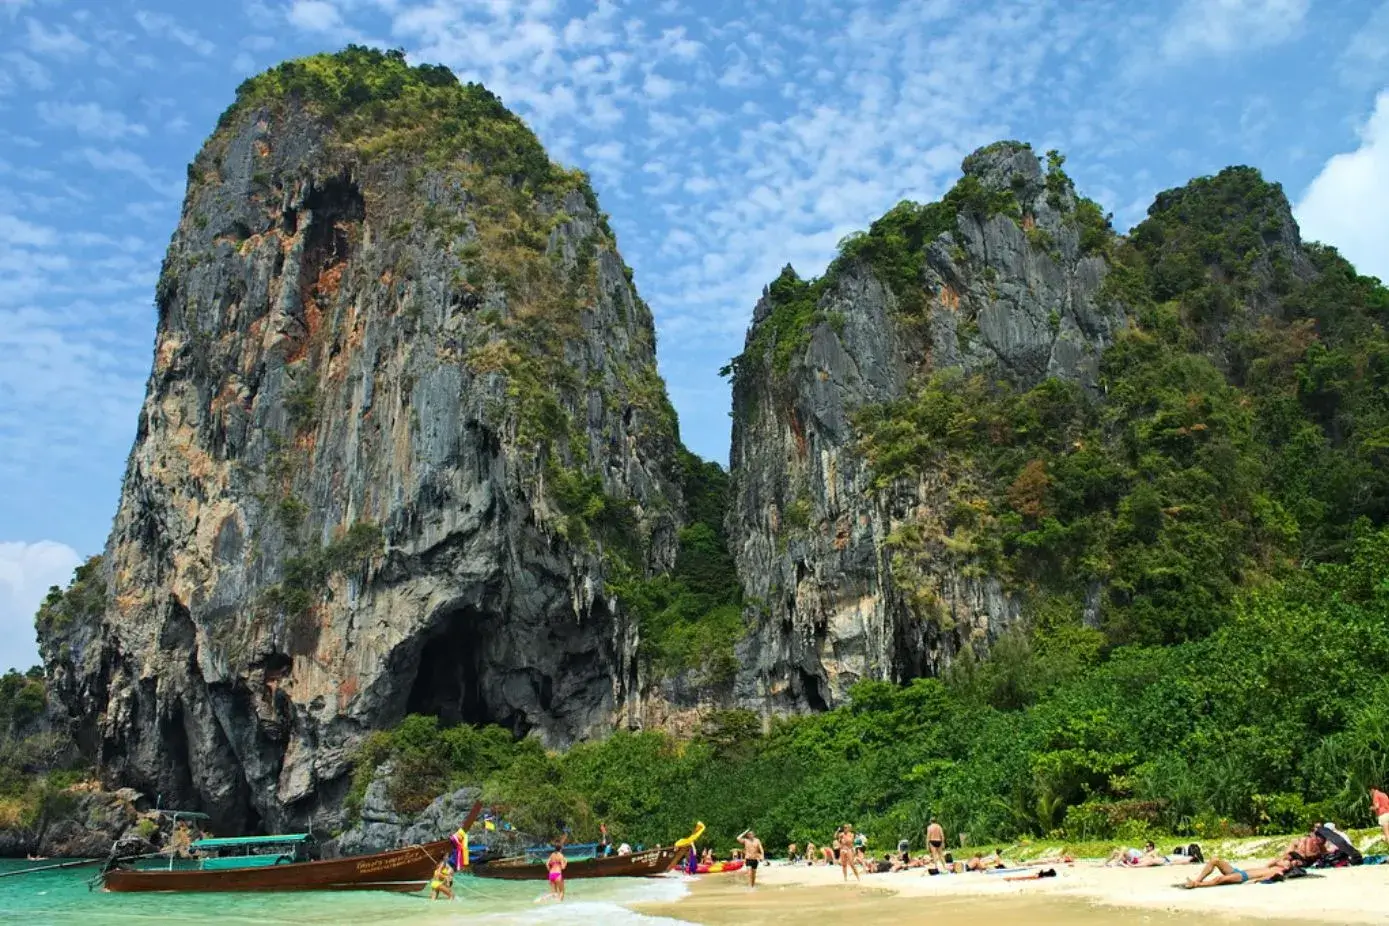 Best Thailand beaches - Railay beach